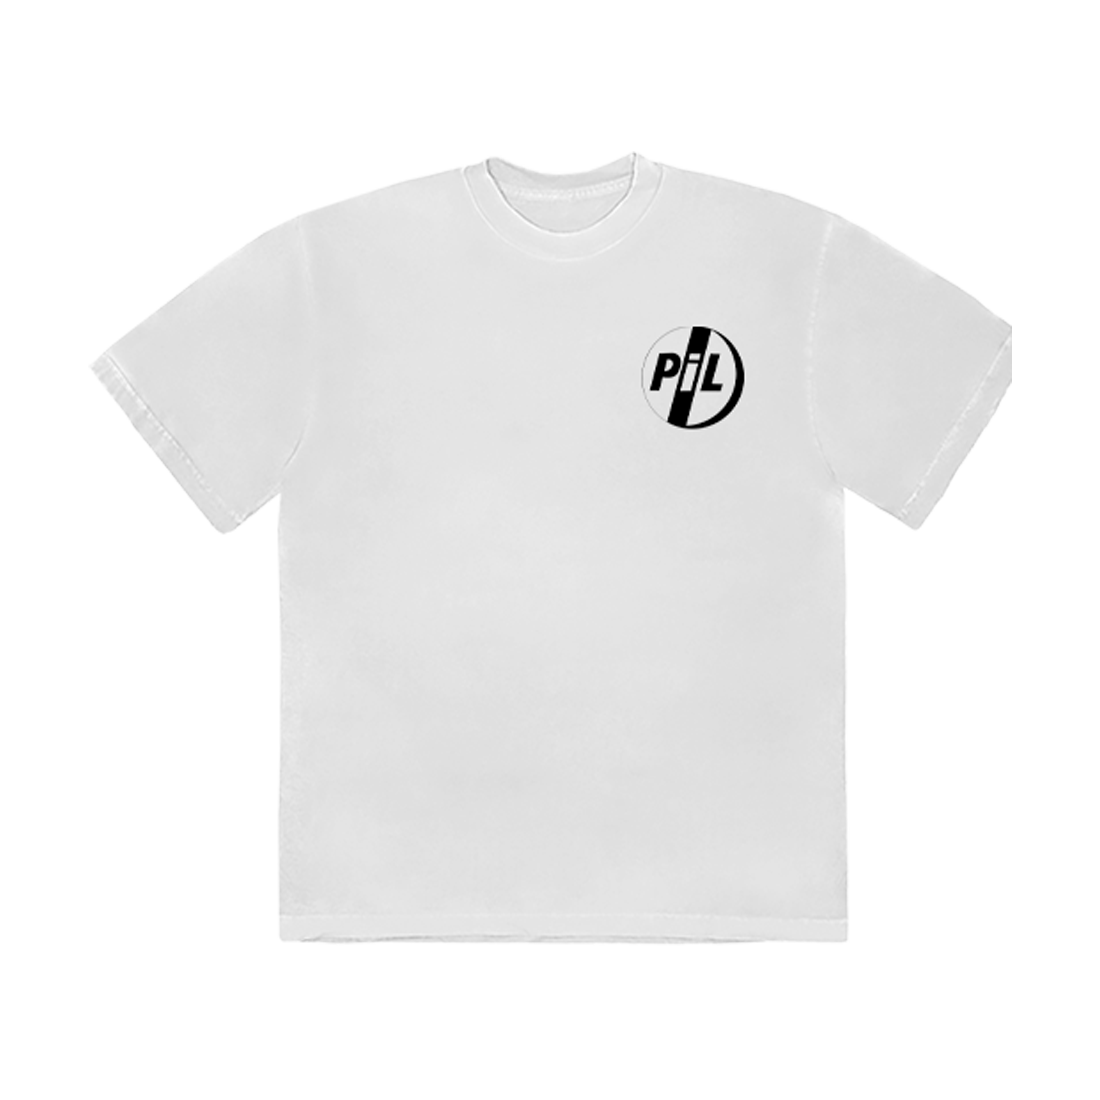 メンズUndercover xPIL public image limited tee - Tシャツ